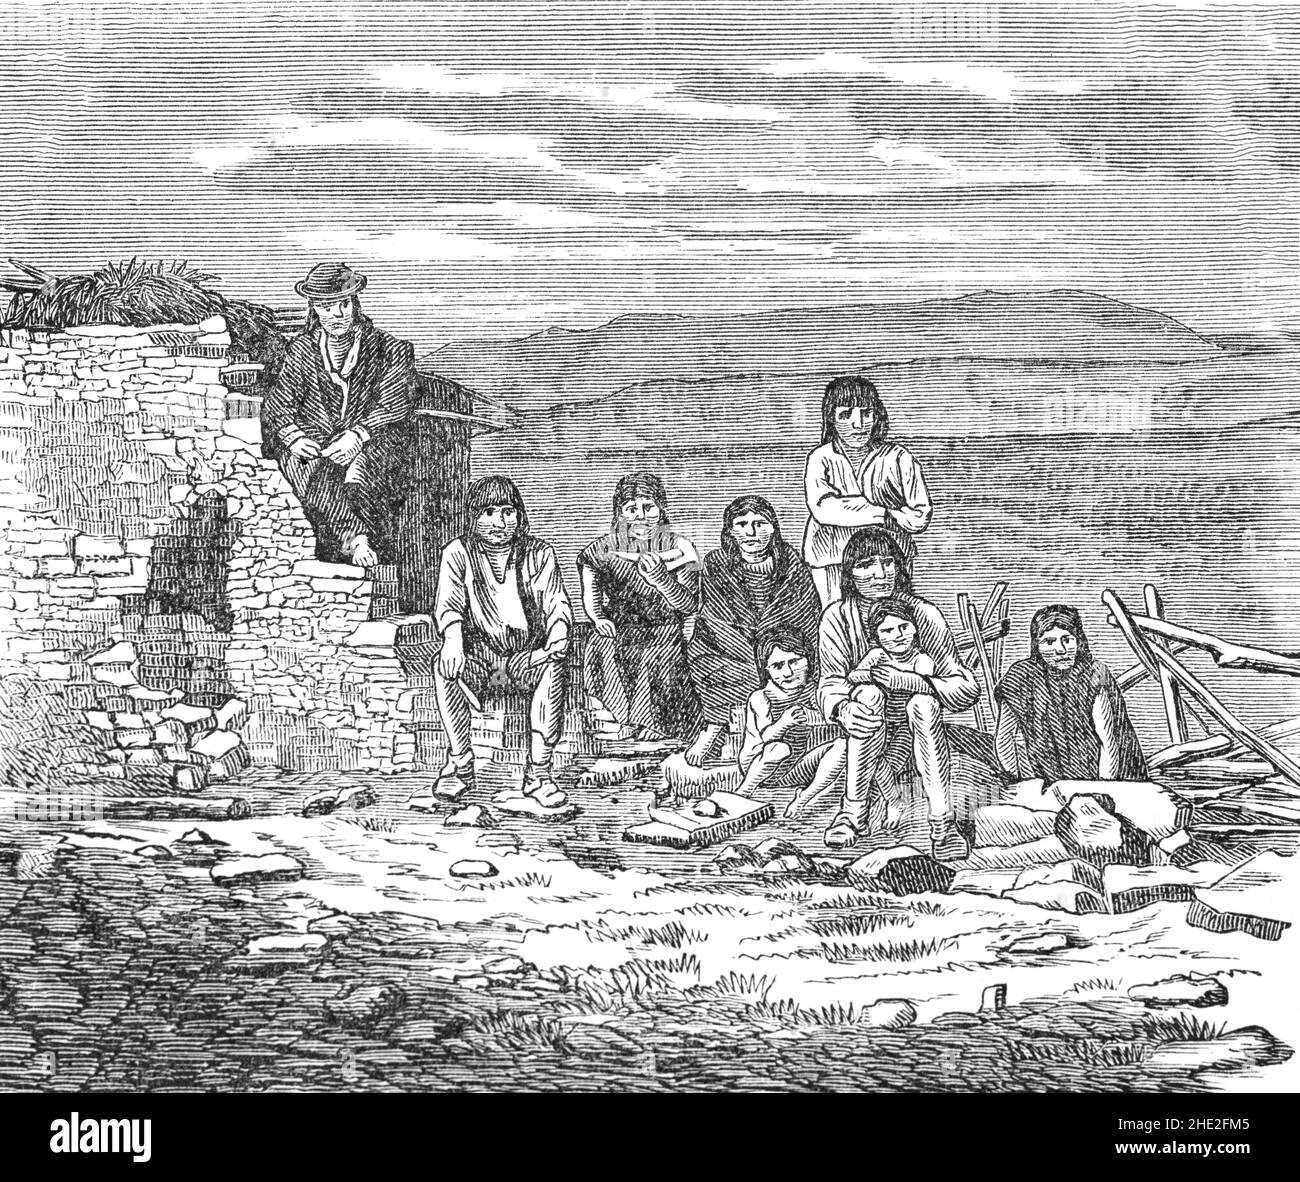 Eine Illustration einer mexikanischen indigenen Familie aus dem späten 19th. Jahrhundert. Mexikaner, auch bekannt als mexikanische Ureinwohner, sind diejenigen, die Teil von Gemeinschaften sind, die ihre Wurzeln auf Bevölkerungen und Gemeinschaften zurückverfolgen, die im heutigen Mexiko vor der Ankunft der Spanier im 16th. Jahrhundert existierten. Stockfoto